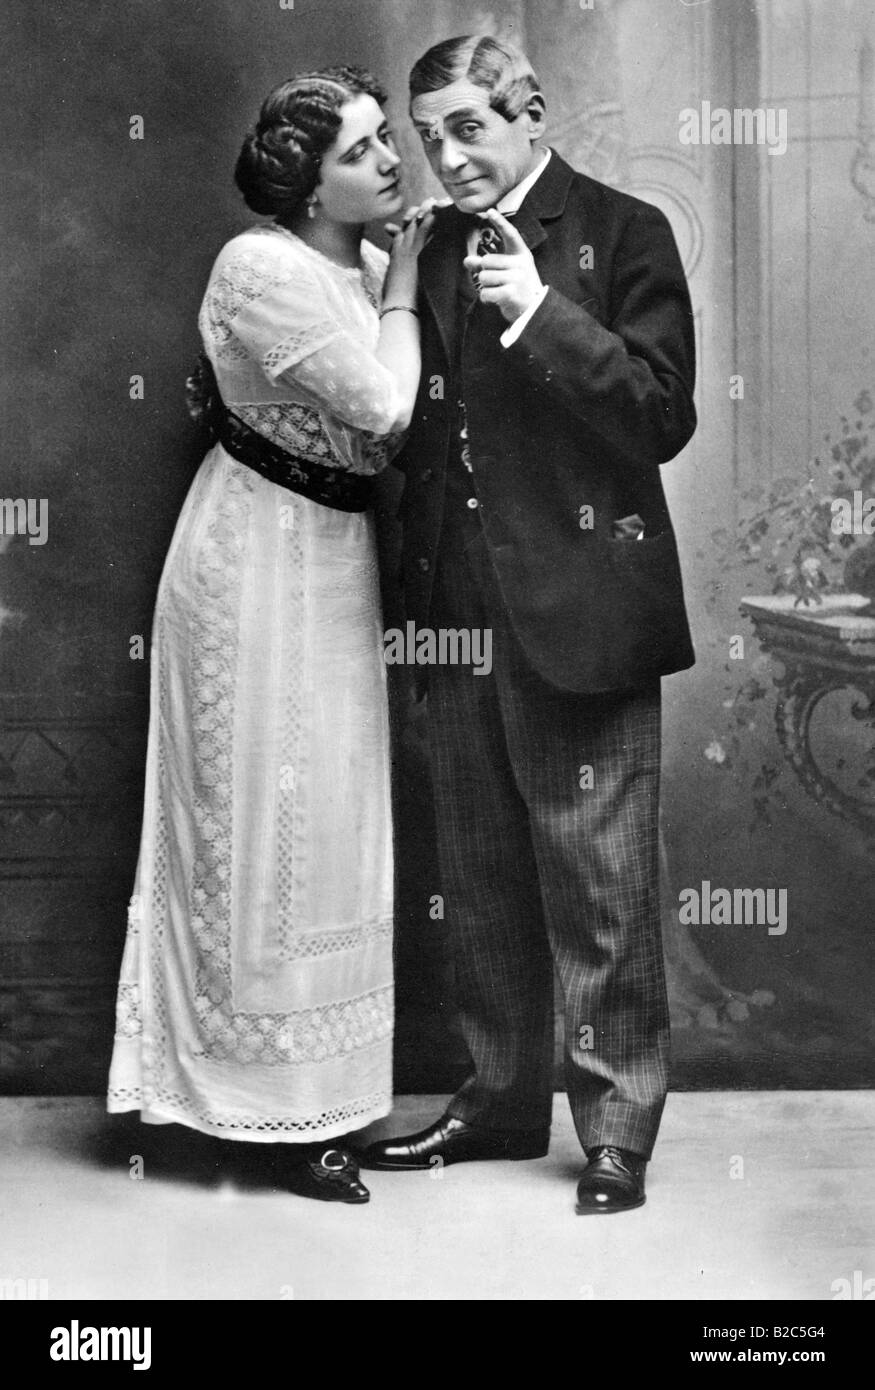 Das Gluecksmaedel, paar stehen neben einander, historische Bild von ca. 1920 Stockfoto